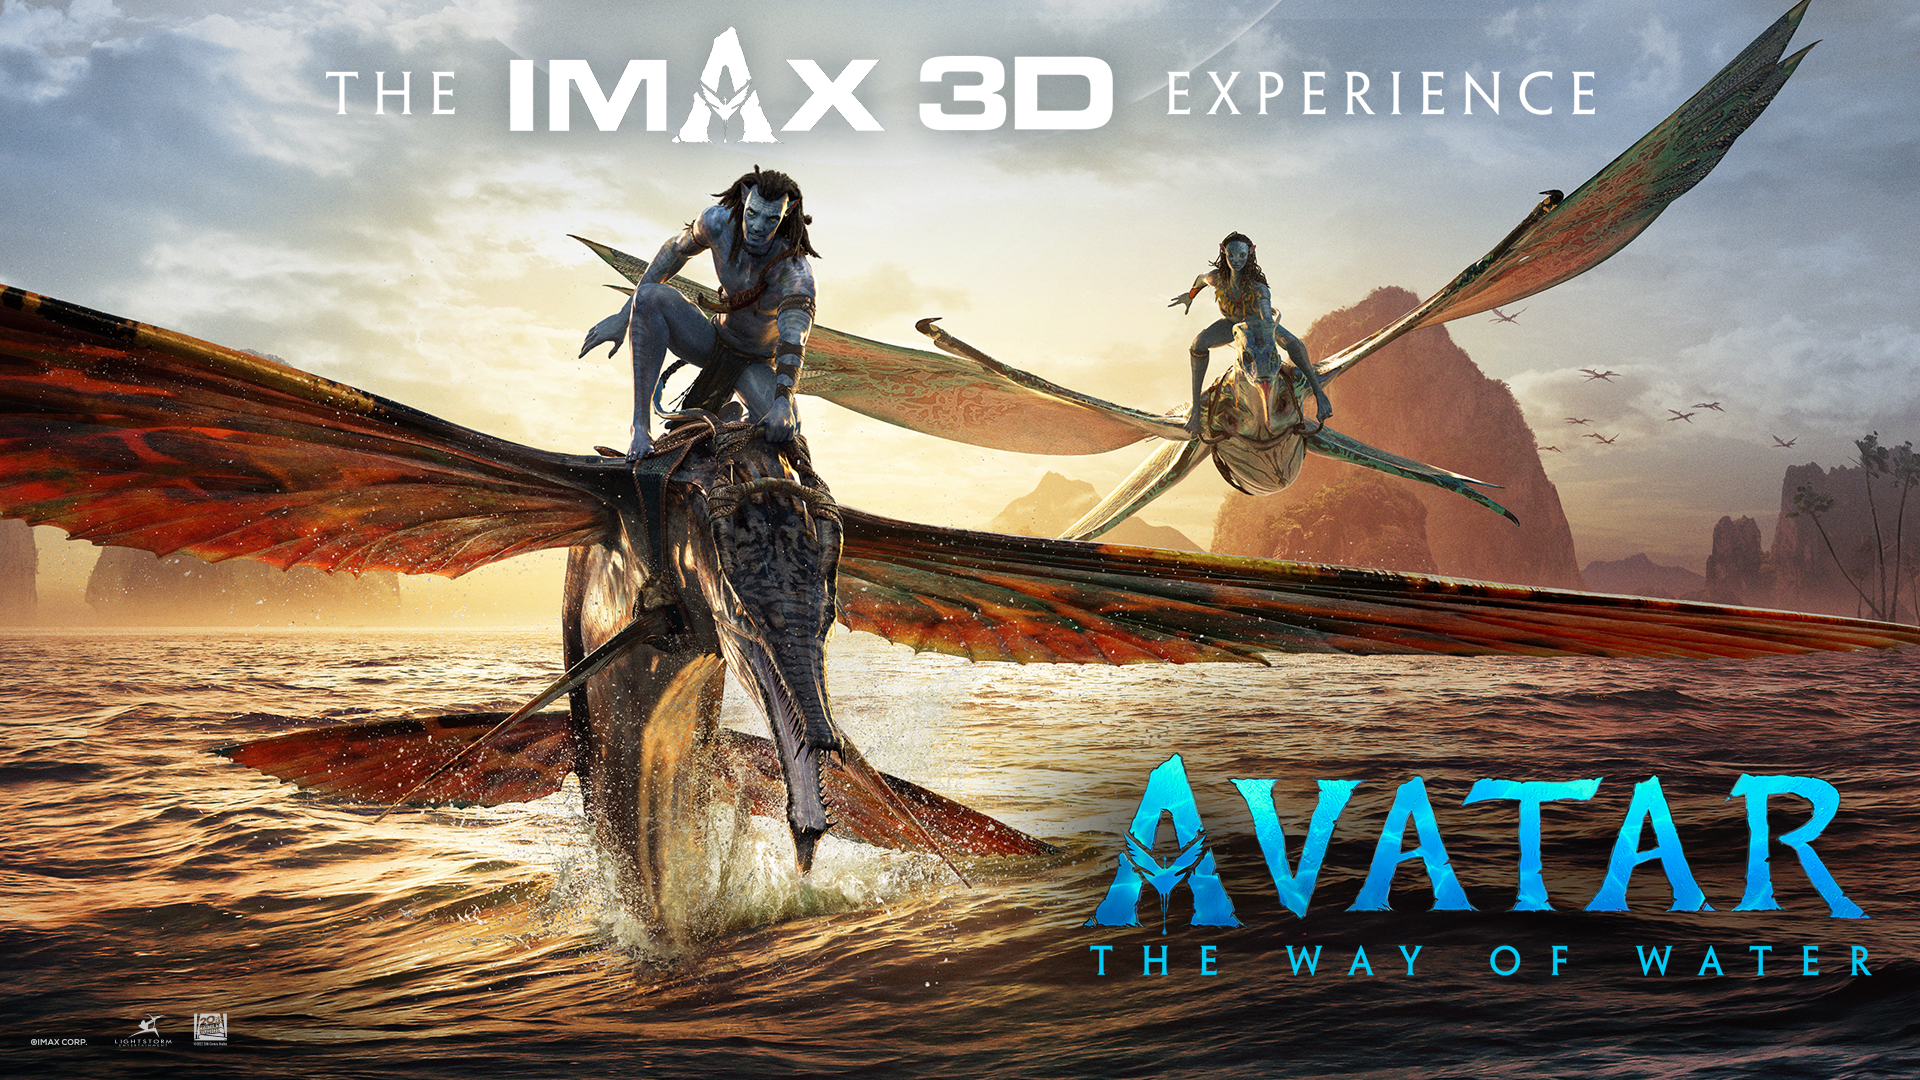 Đừng vội xem Avatar 2 nếu chưa biết đến những công nghệ chiếu phim đặc  biệt sau